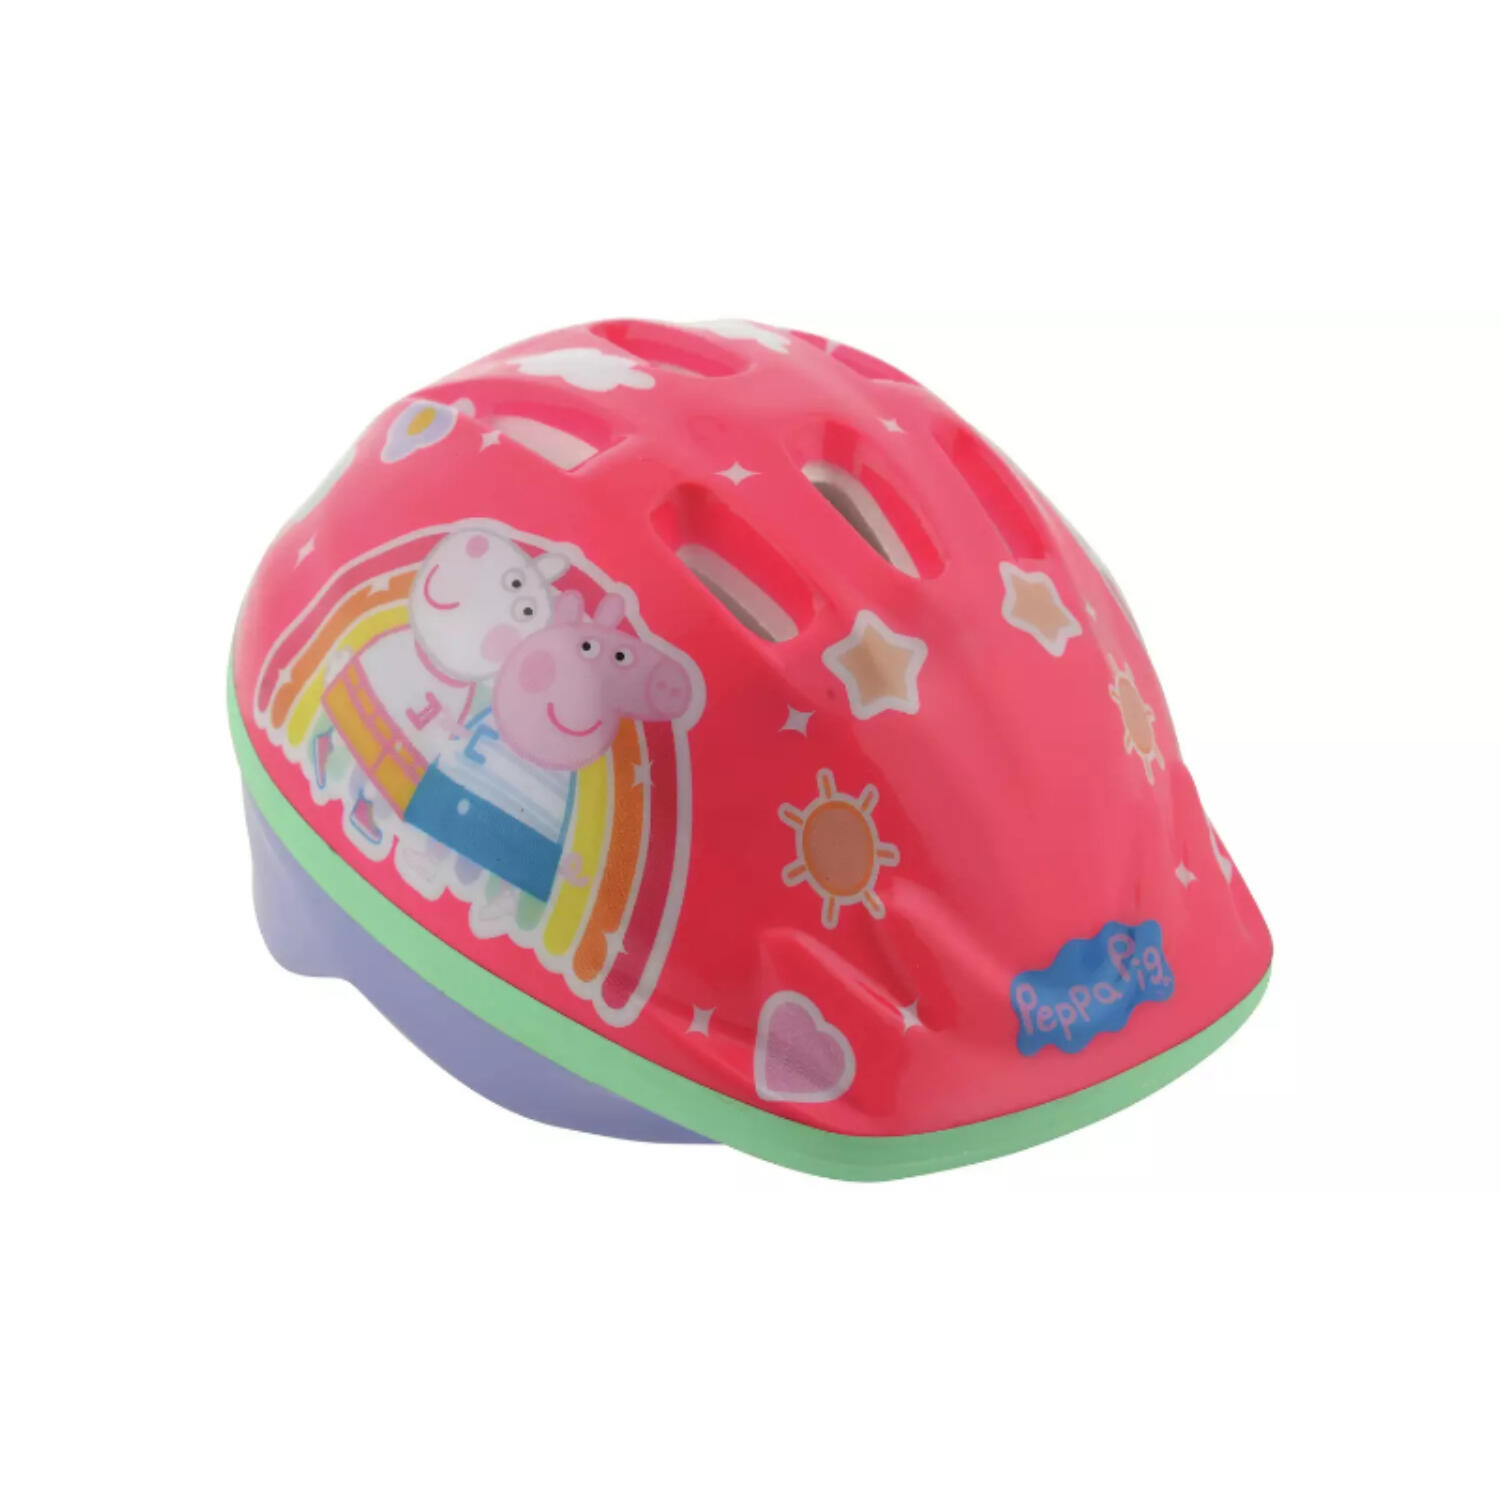 Peppa Pig Kids Bike Helmet - 48-52cm 1/3